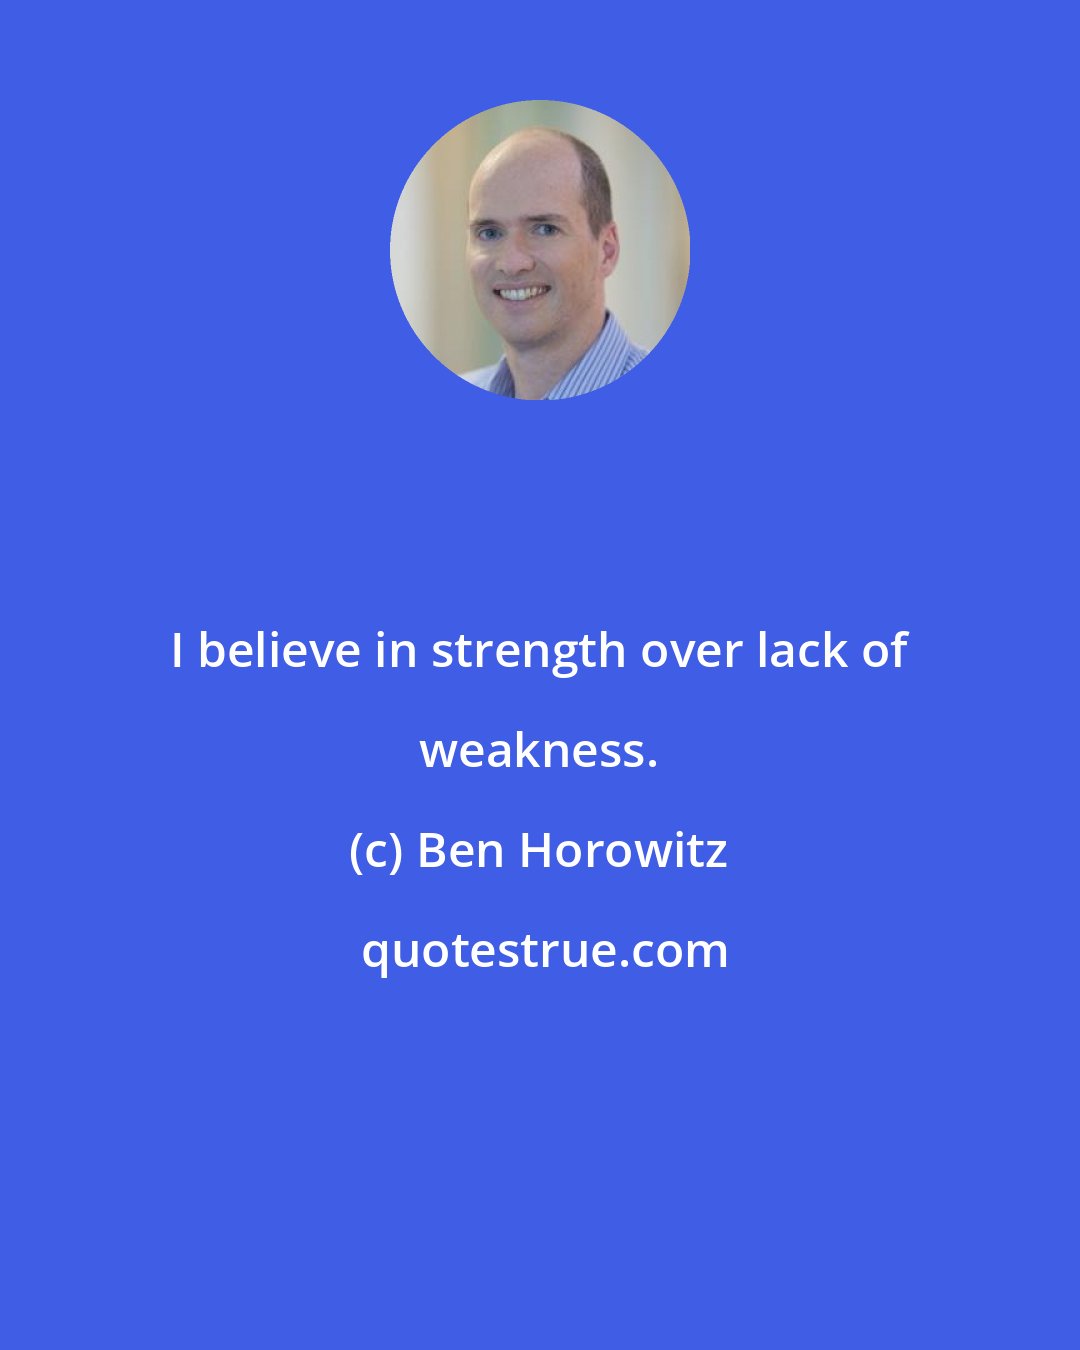 Ben Horowitz: I believe in strength over lack of weakness.